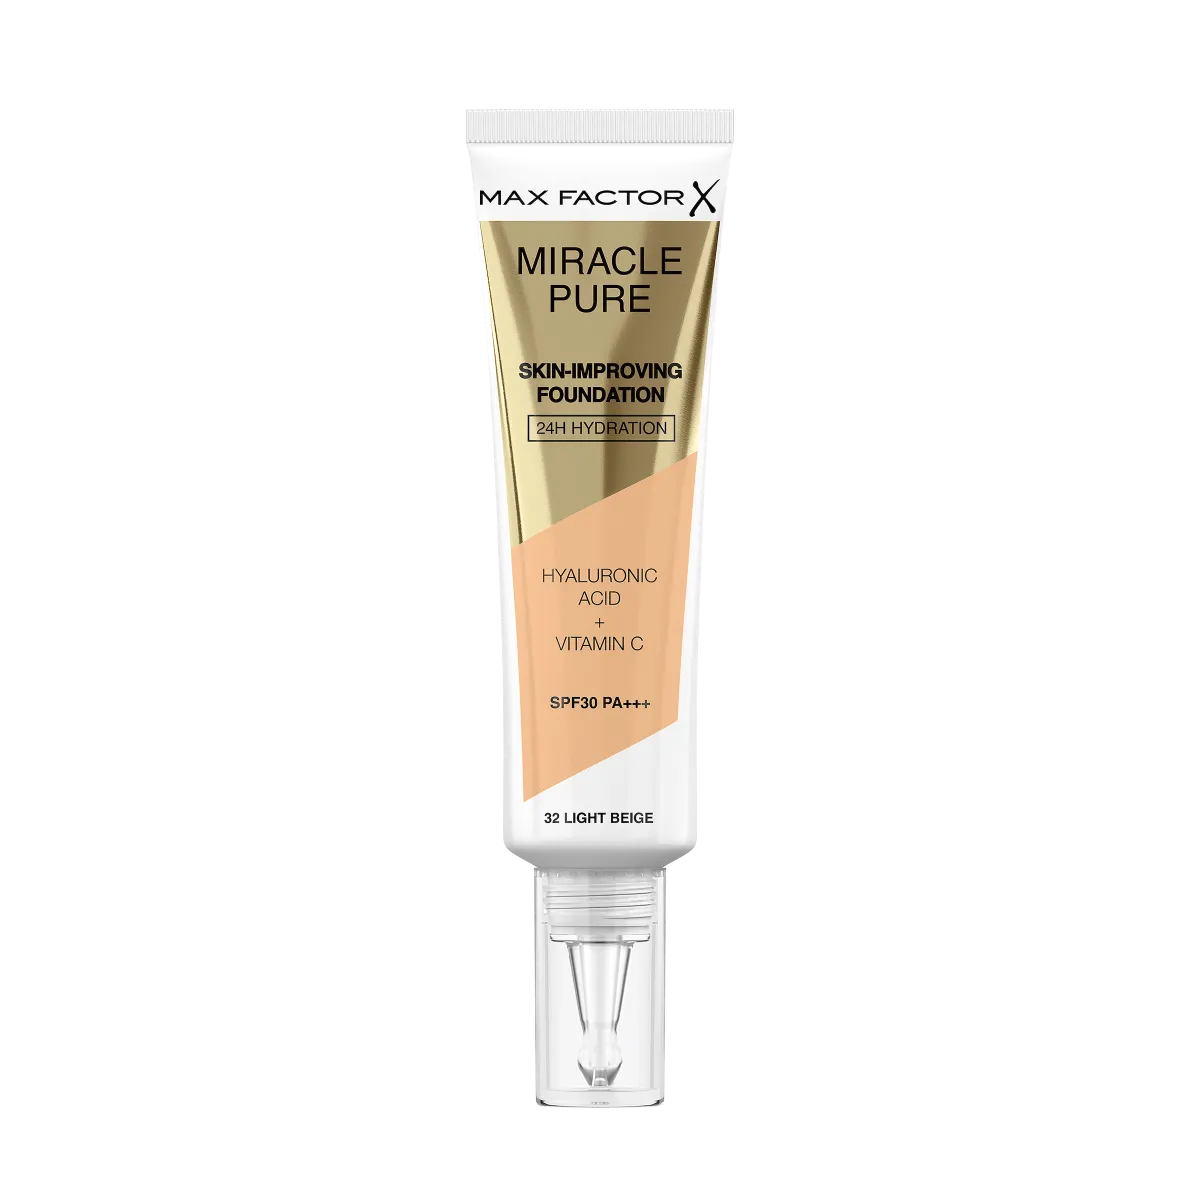 Max Factor Miracle Pure Skin Podkład poprawiający kondycję skóry nr 32 Light Beige, 30 ml 